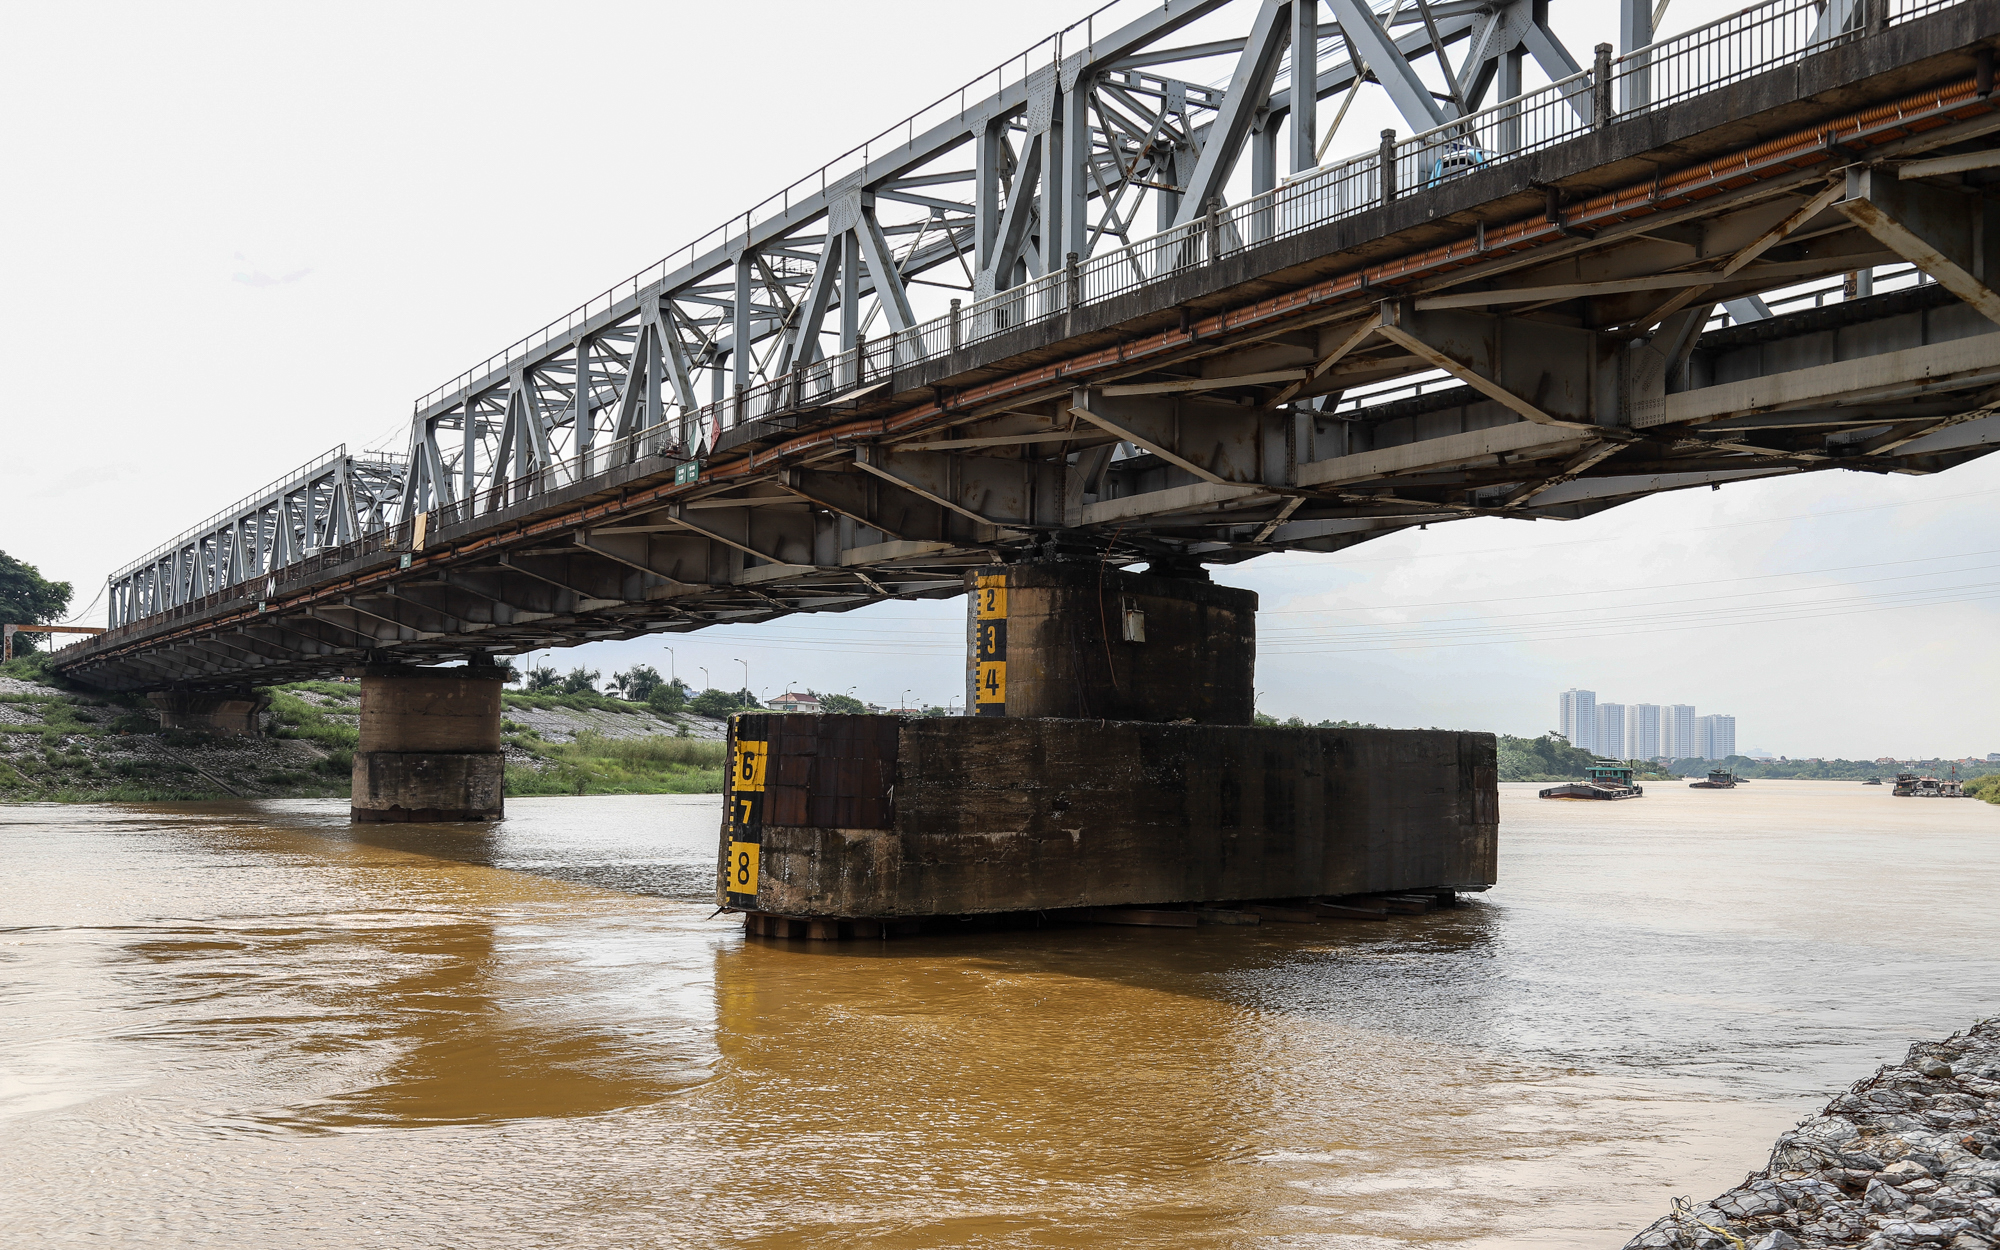 Cầu quay đầu tiên ở Việt Nam, ra đời trước cầu sông Hàn gần 100 năm - Ảnh 2.